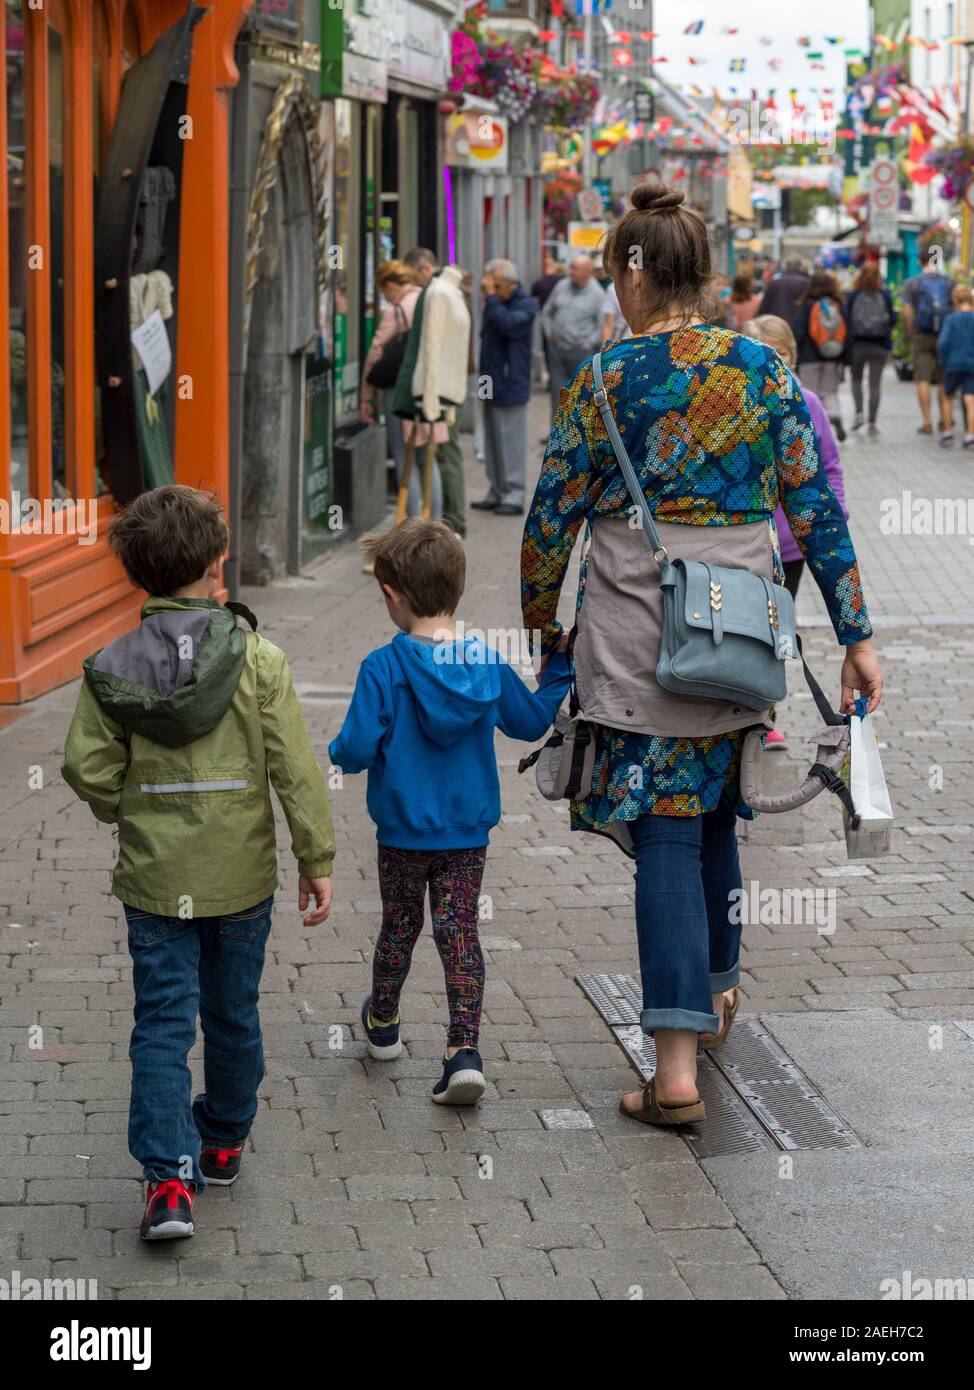 Mère marchant dans la rue du marché avec ses enfants, la ville de Galway, comté de Galway, Irlande Banque D'Images